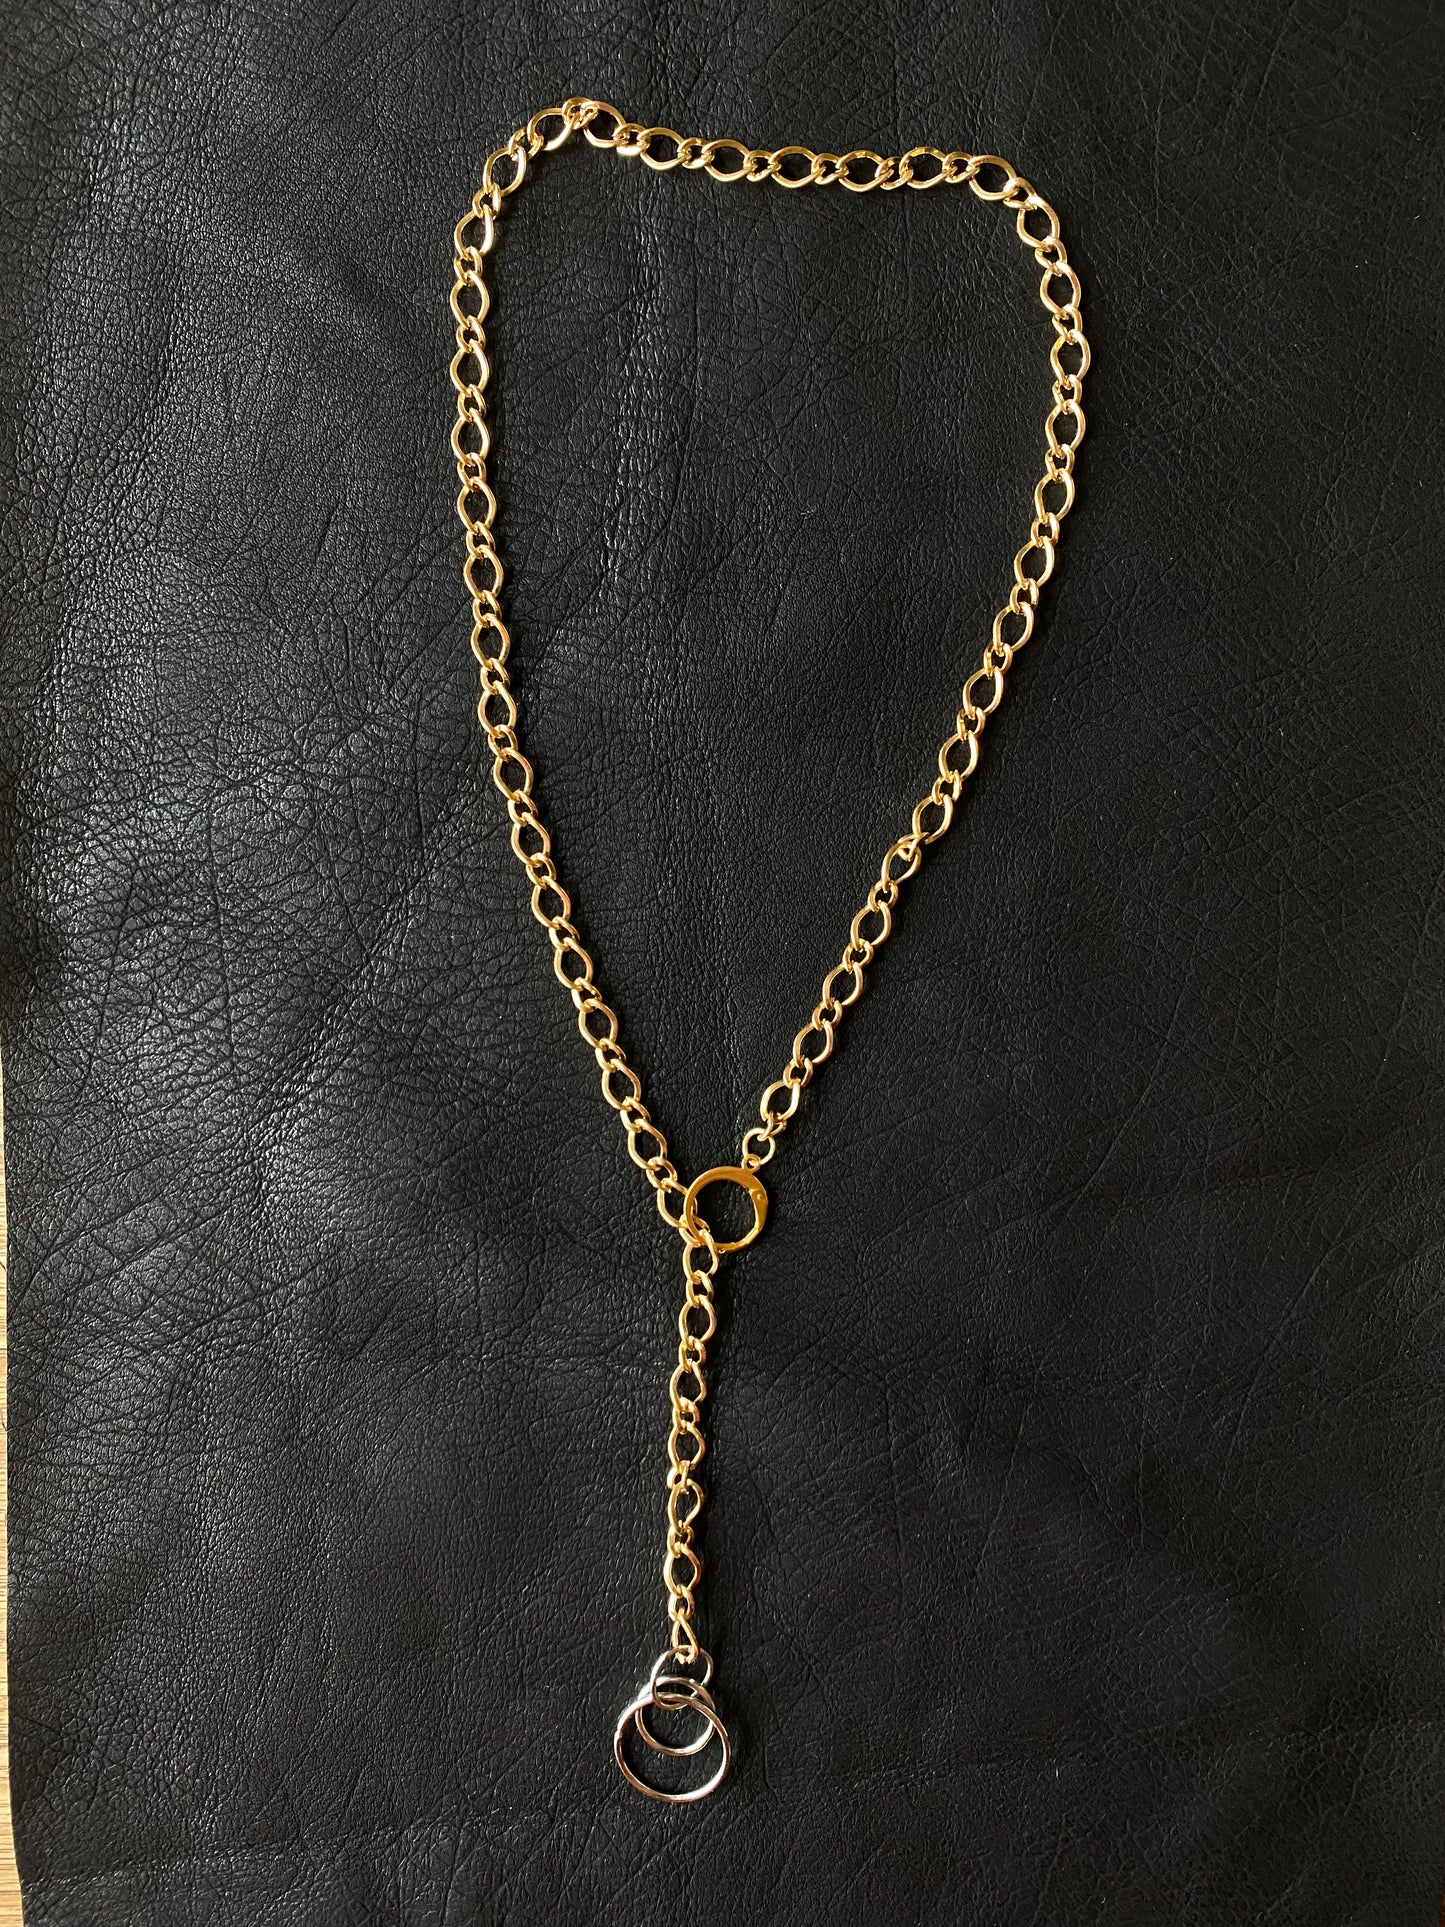 The Vortex Gold Chain Necklace